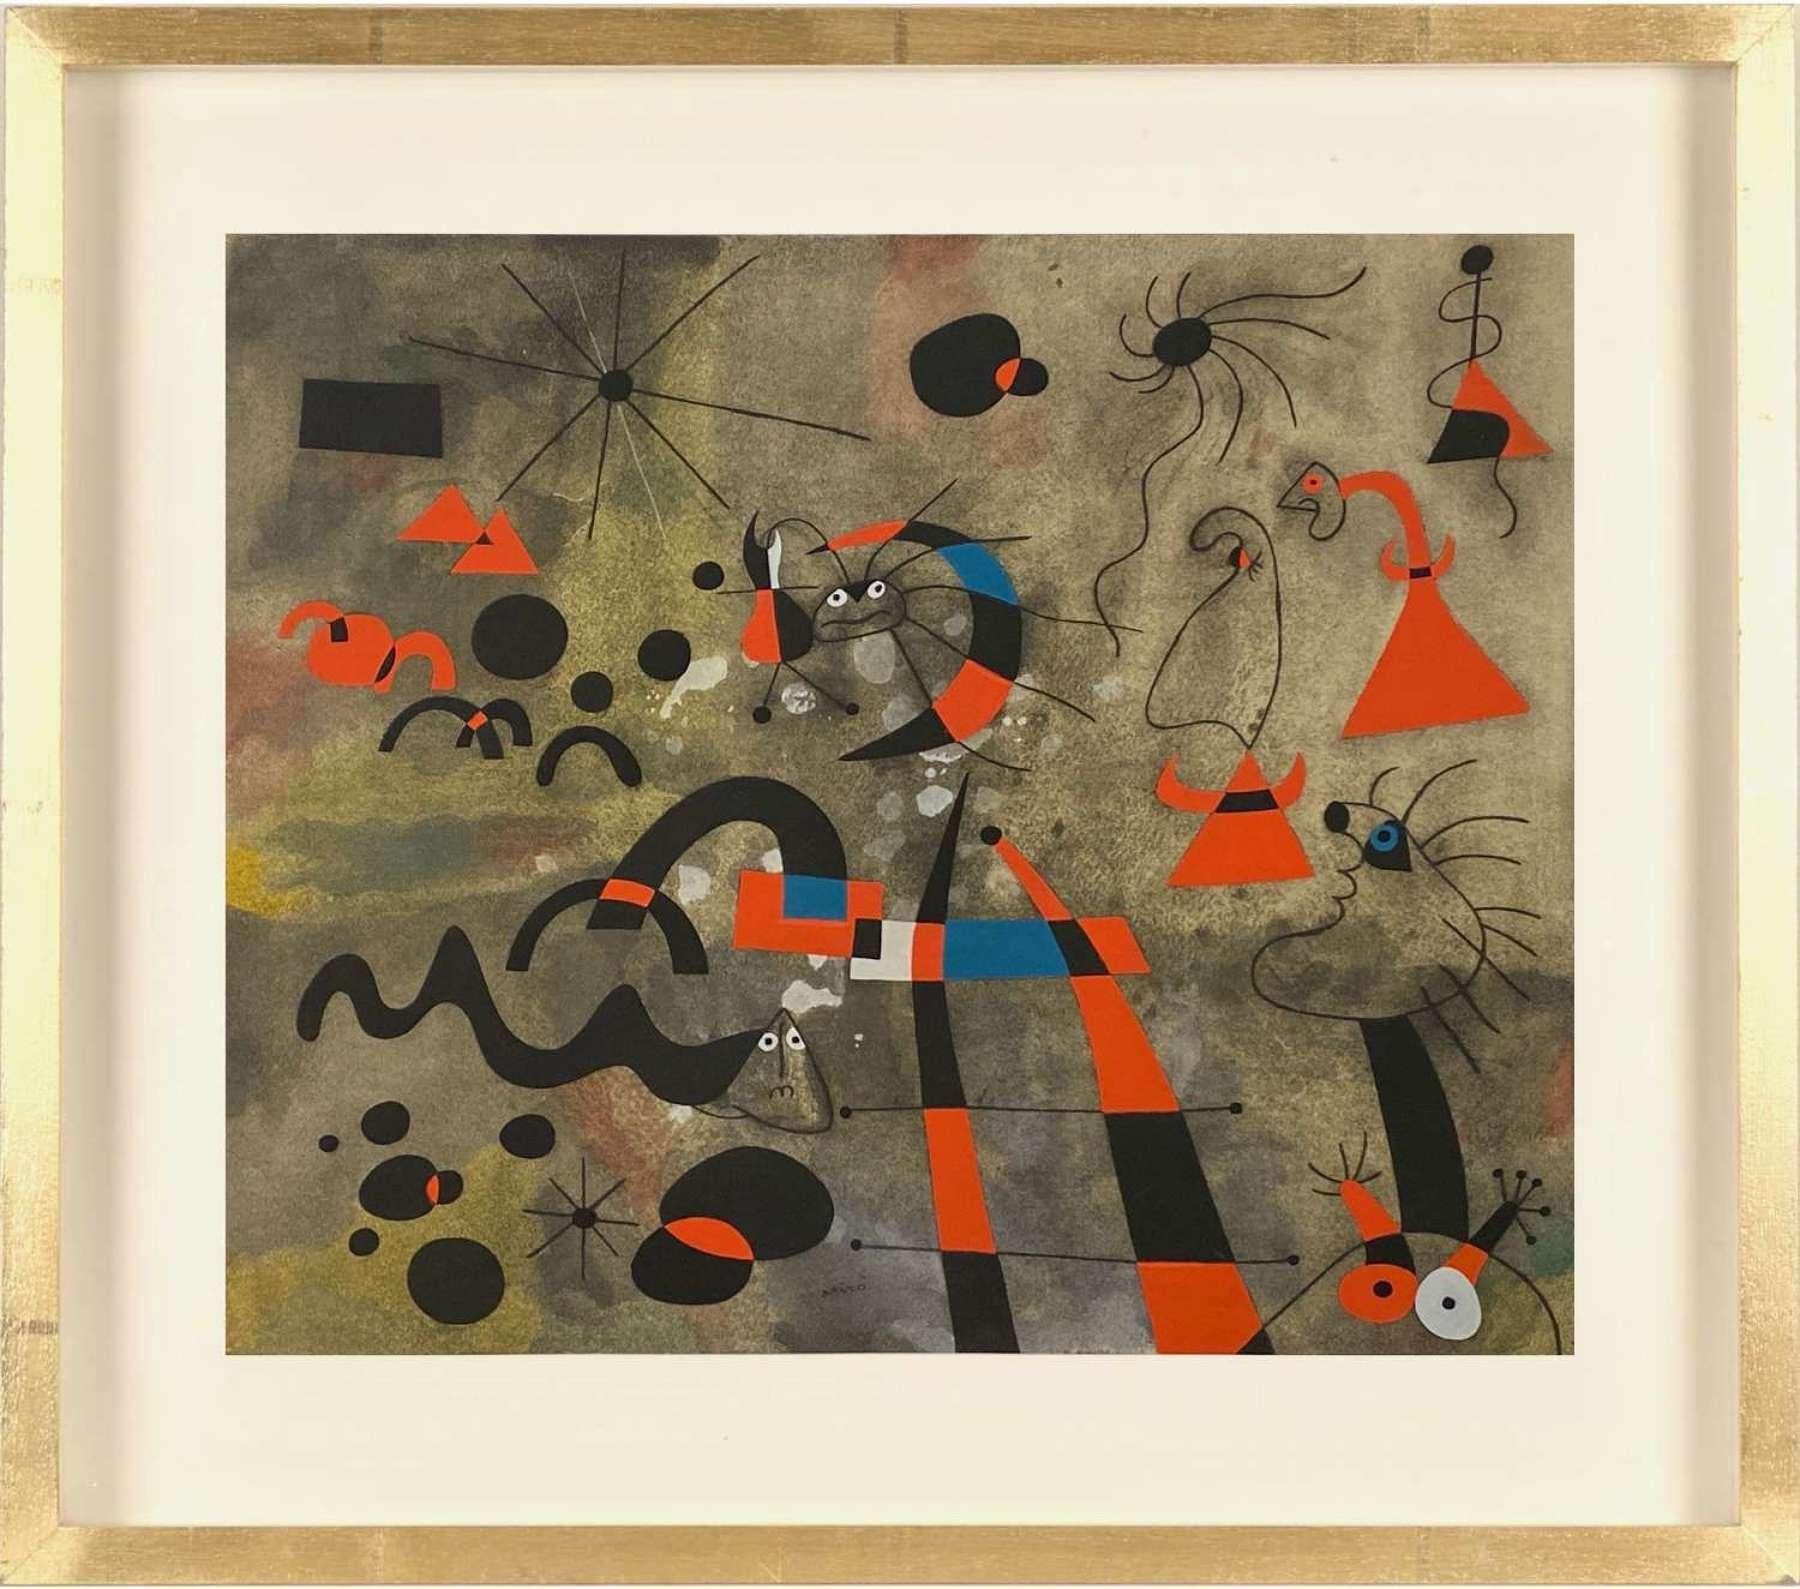 Les vingt-deux tableaux connus sous le nom de "Constellations" ont été commencés par Miro en Normandie, en France, en 1939, au début de la Seconde Guerre mondiale, et achevés à Barcelone deux ans plus tard, après que Miró et sa famille eurent été